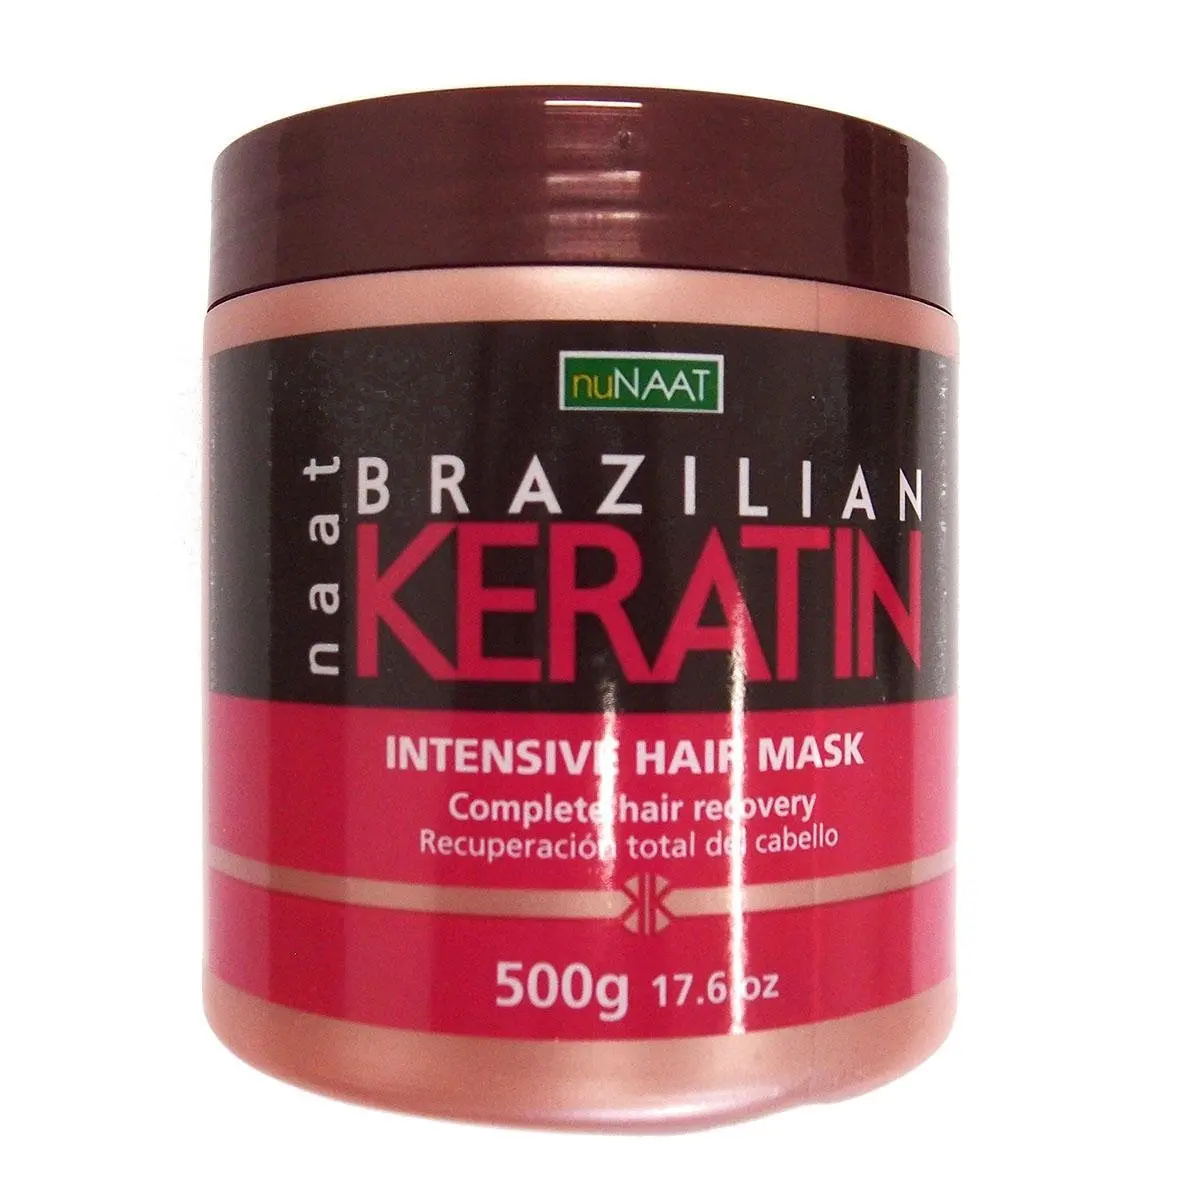 Маска Intensive кератин. Маска для волос Keratin. Nunaat.